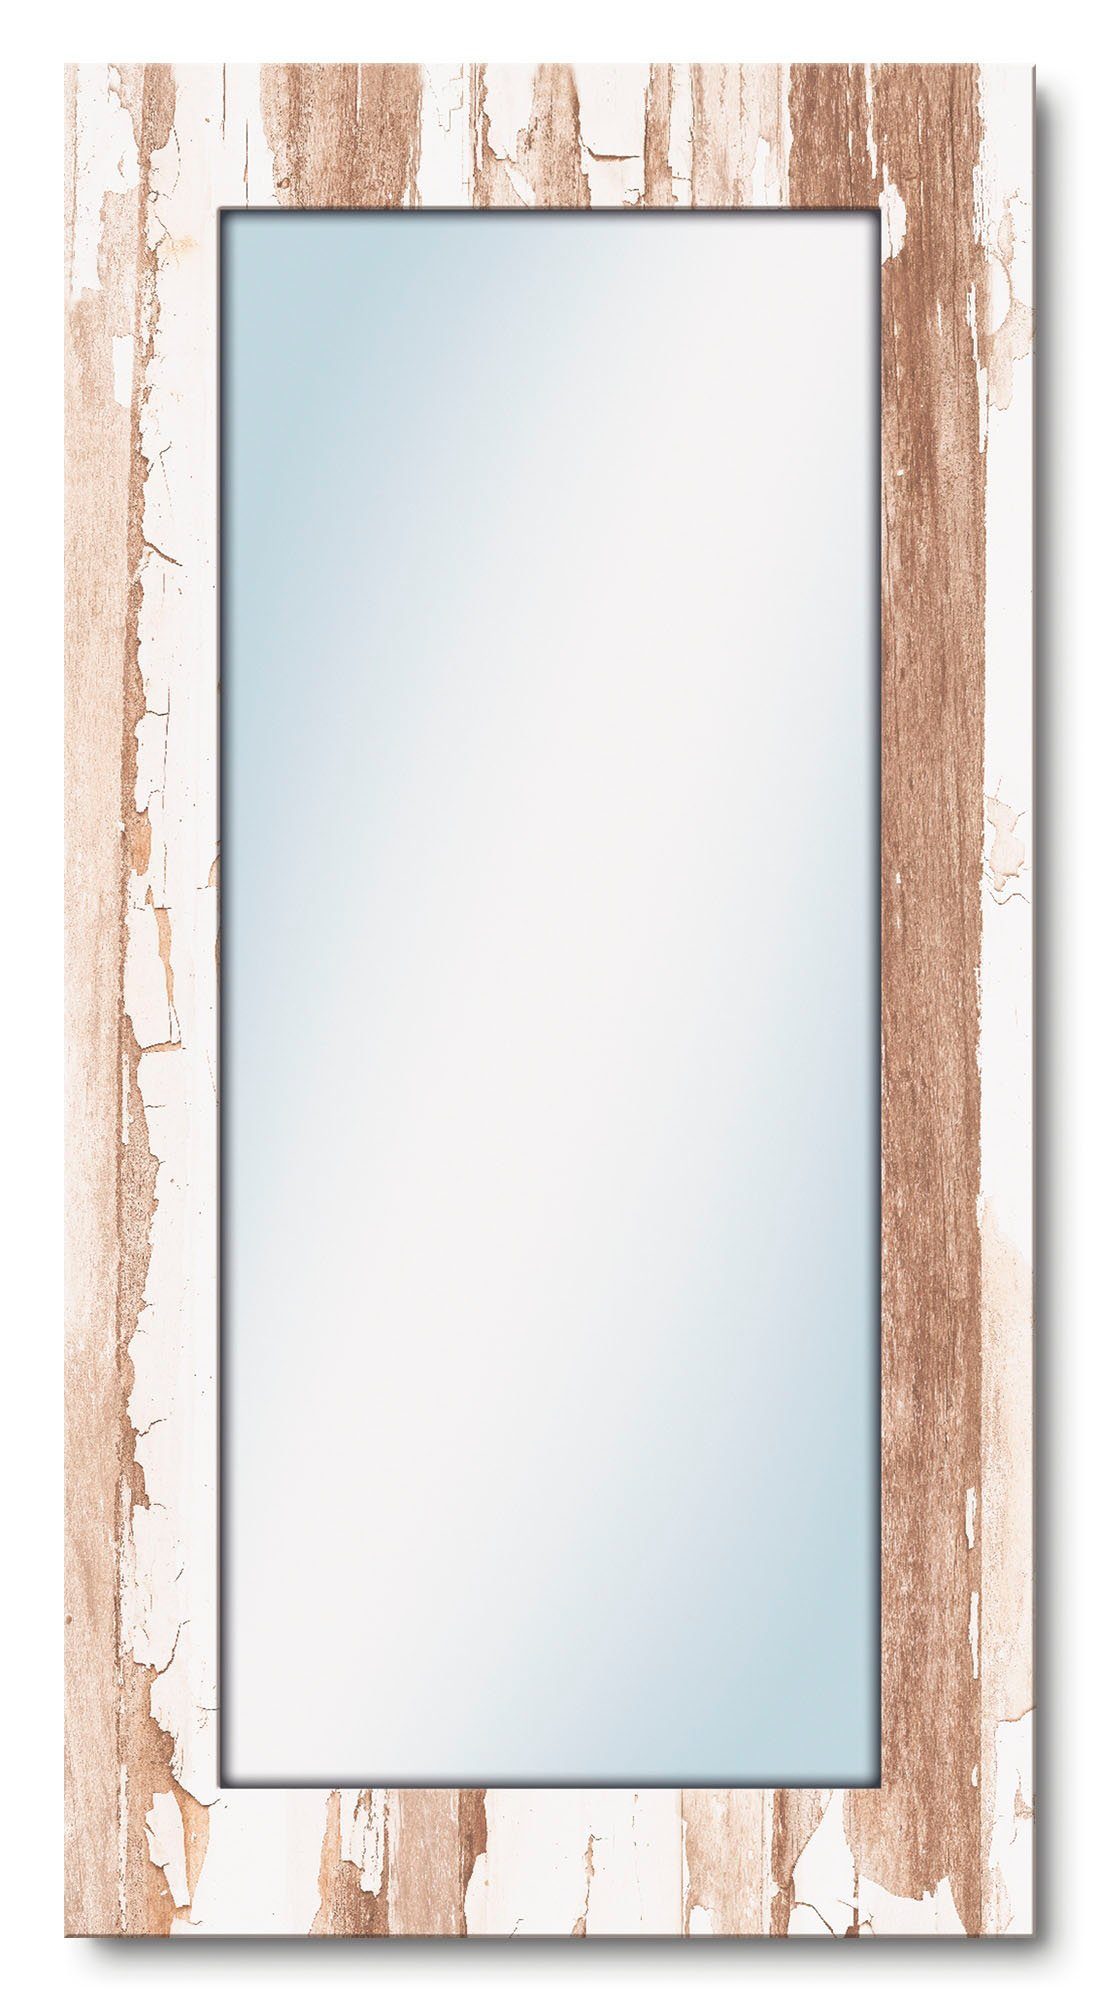 Artland Sierspiegel Home ingelijste spiegel voor het hele lichaam met motiefrand, geschikt voor kleine, smalle hal, halspiegel, mirror spiegel omrand om op te hangen